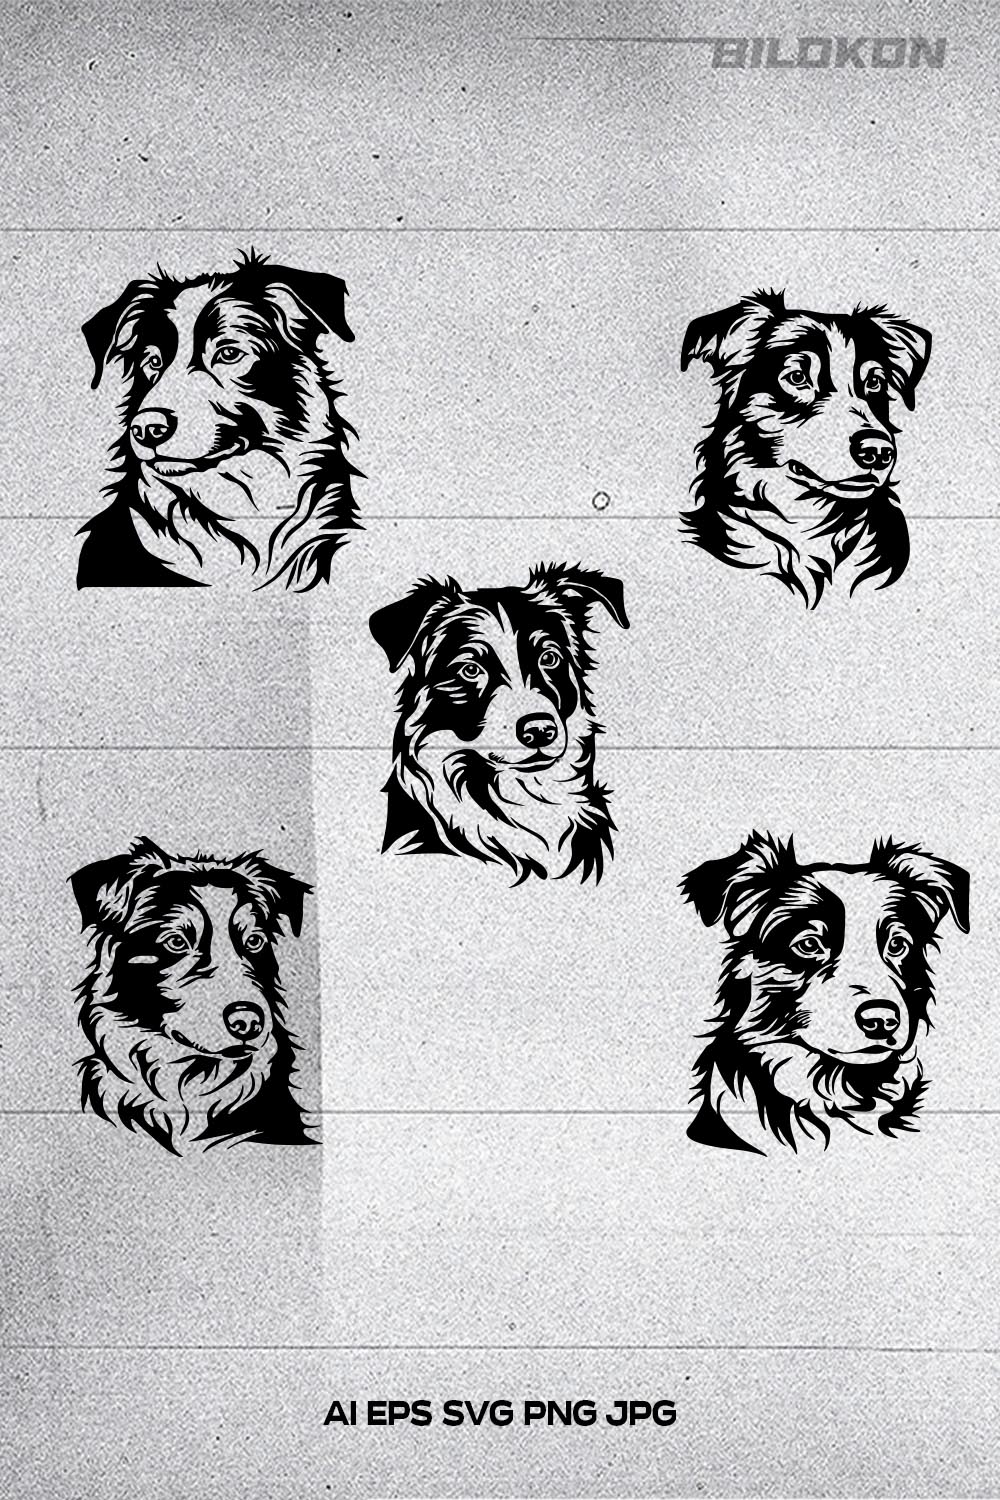 Border collie dog head, Vector, Illustration, SVG BUNDLE pinterest preview image.